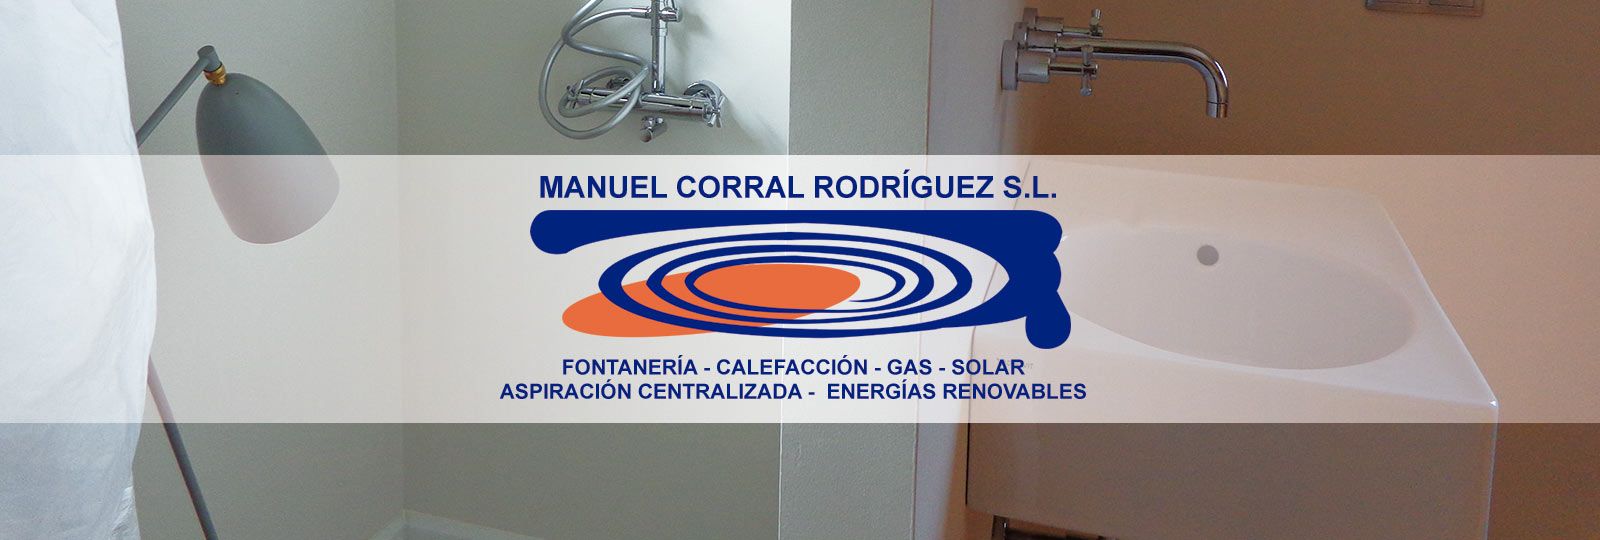 Portada MANUEL CORRAL RODRIGUEZ S.L.